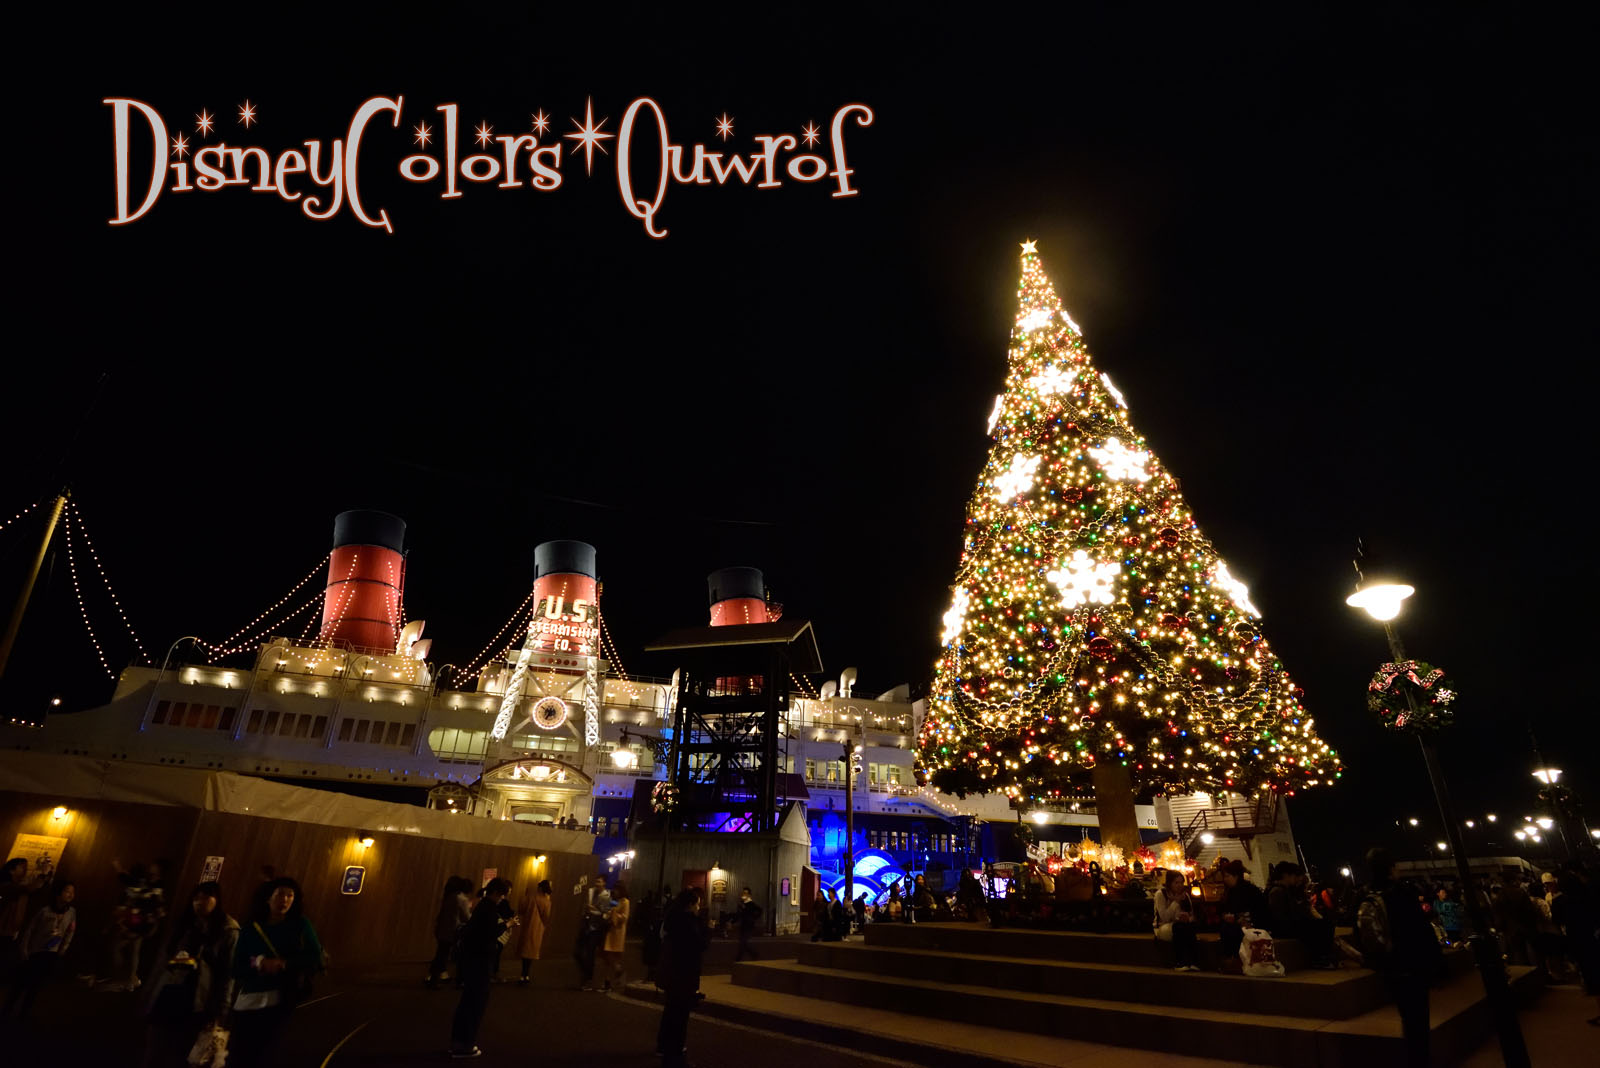 ディズニーシー クリスマス ウィッシュ15 デコレーション特集 Disney Colors Blog